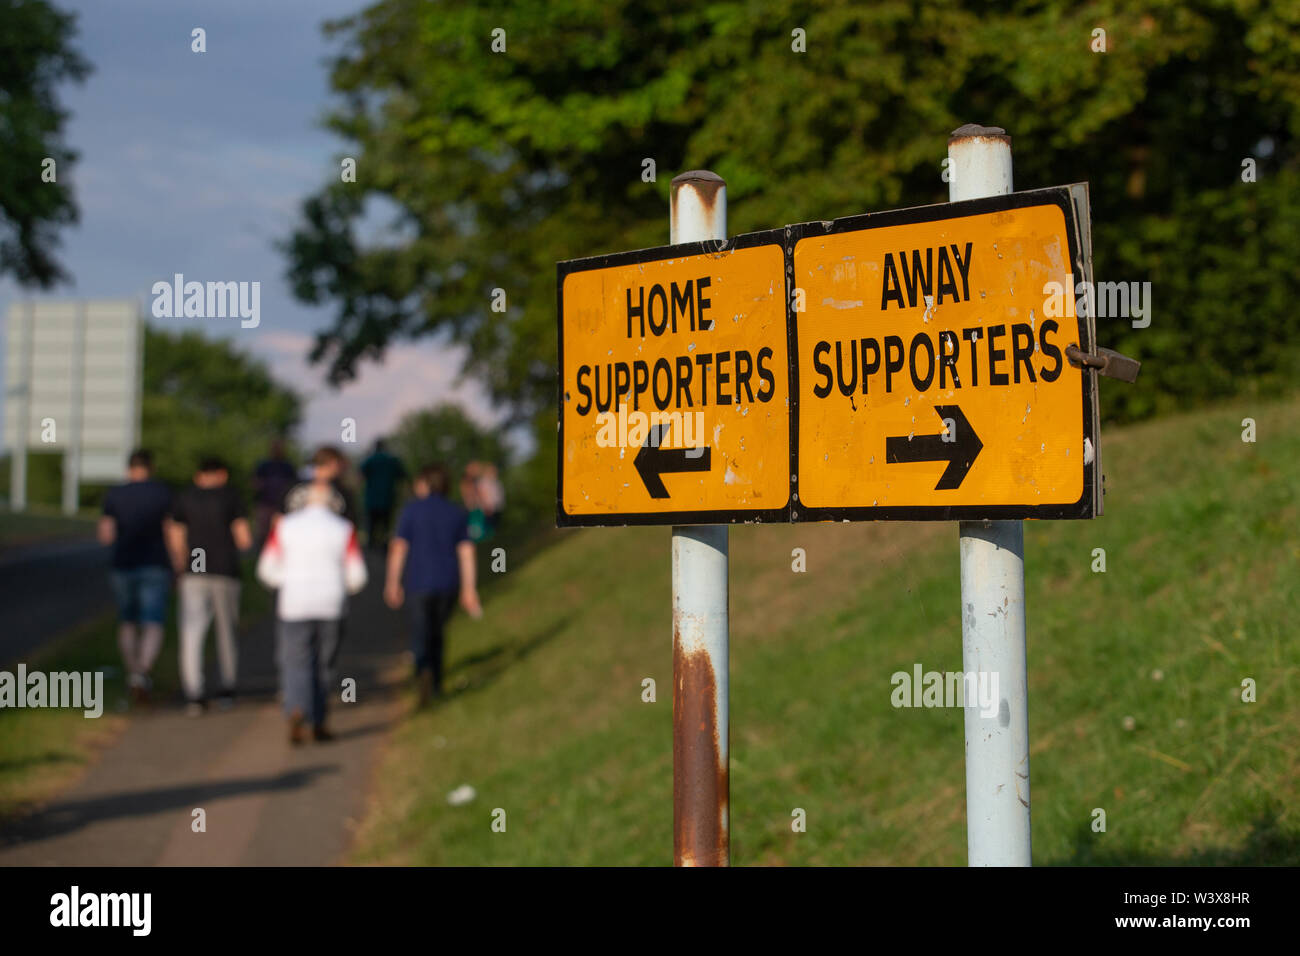 Digital Signage presso il campo di calcio in Inghilterra che indica la direzione in cui la casa e lontano tifosi dovrebbero andare. Foto Stock